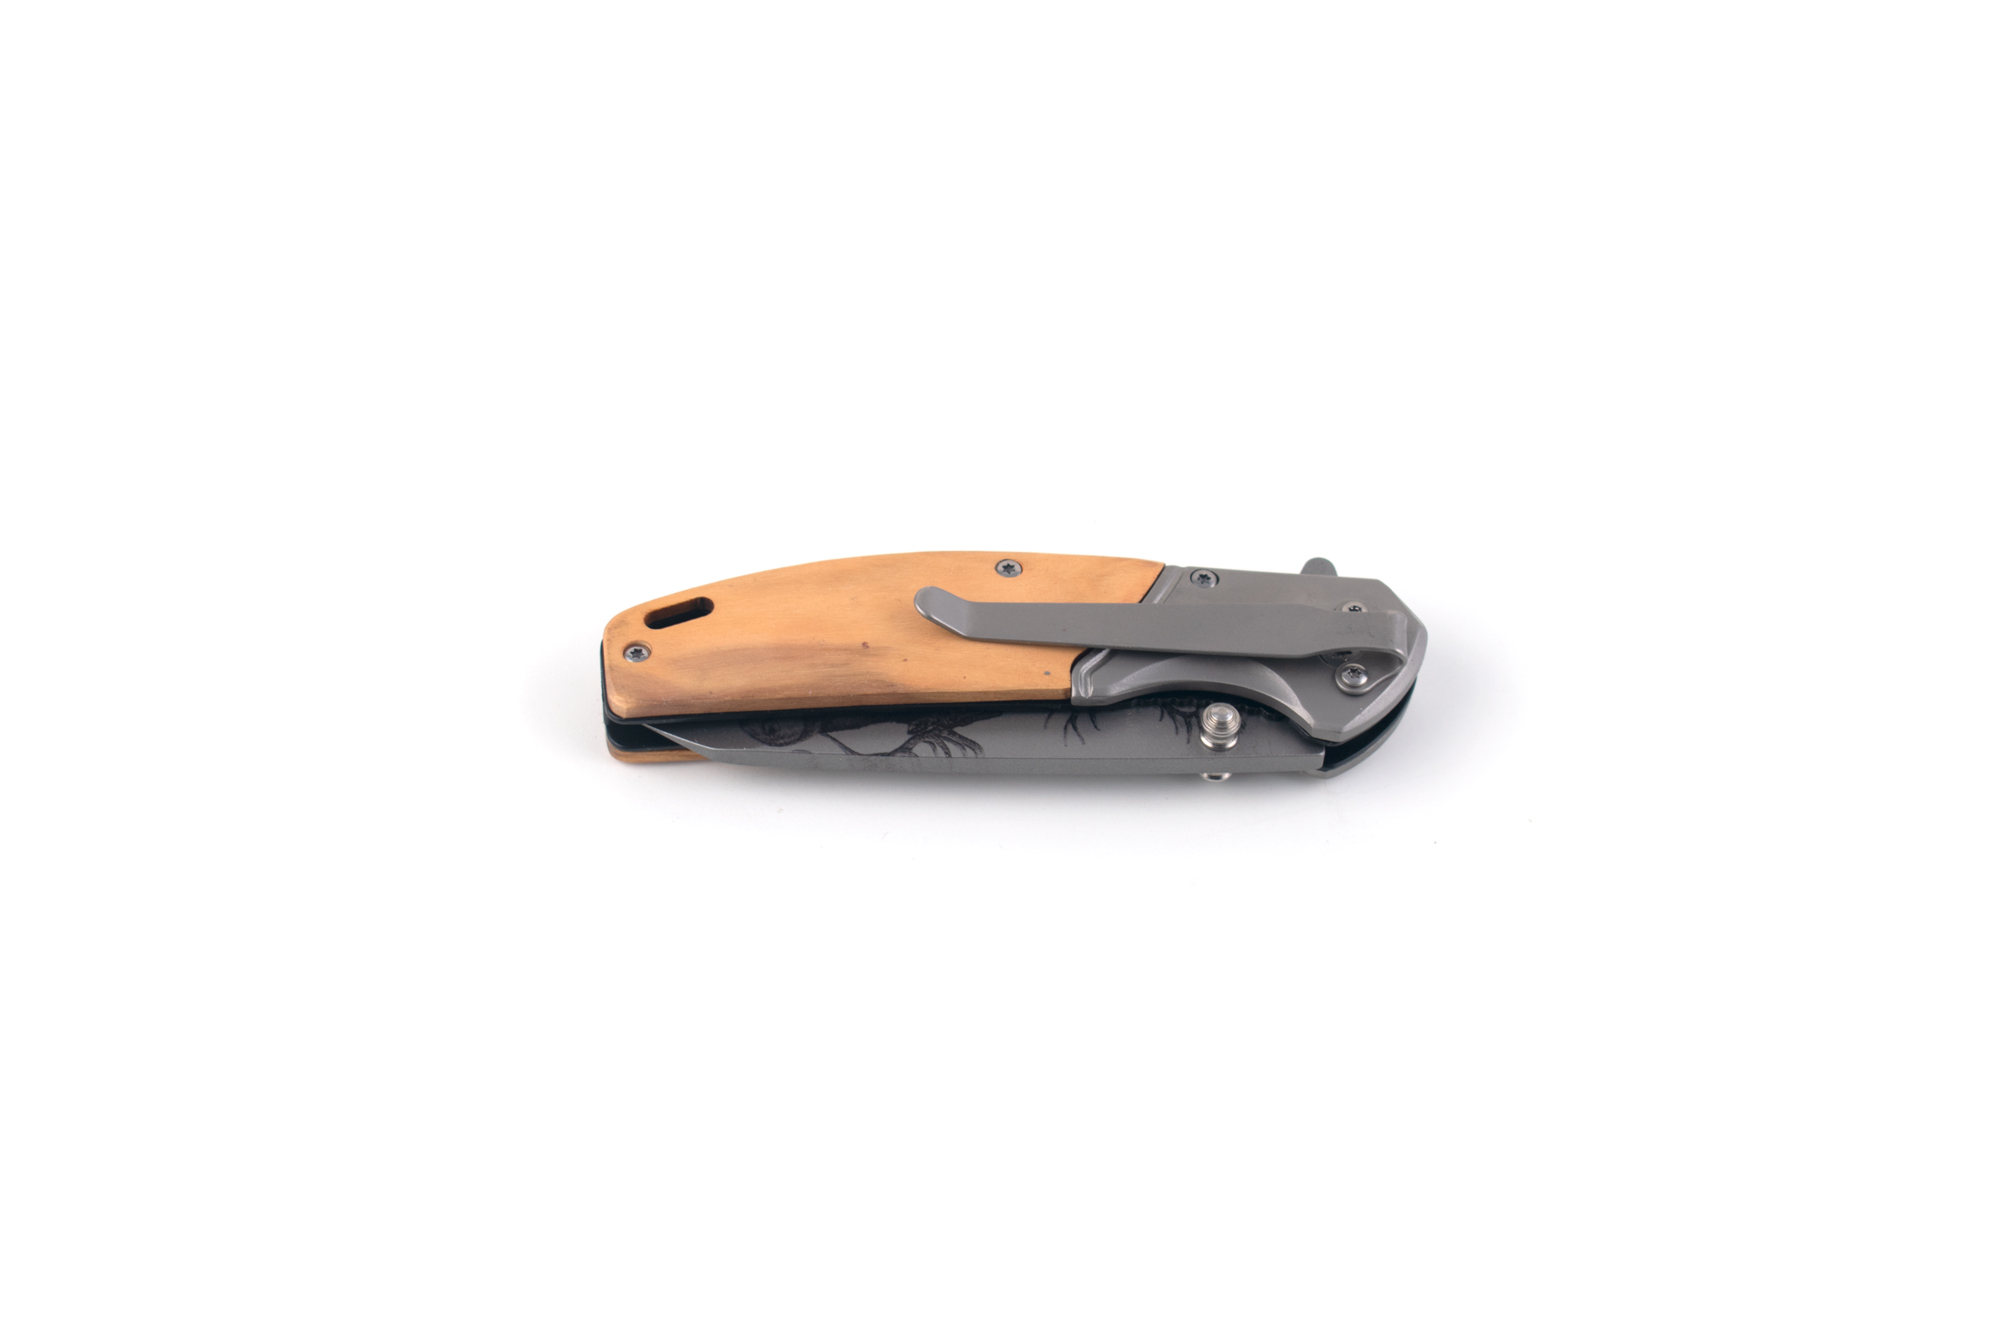 Pocket Knife with Deer Design